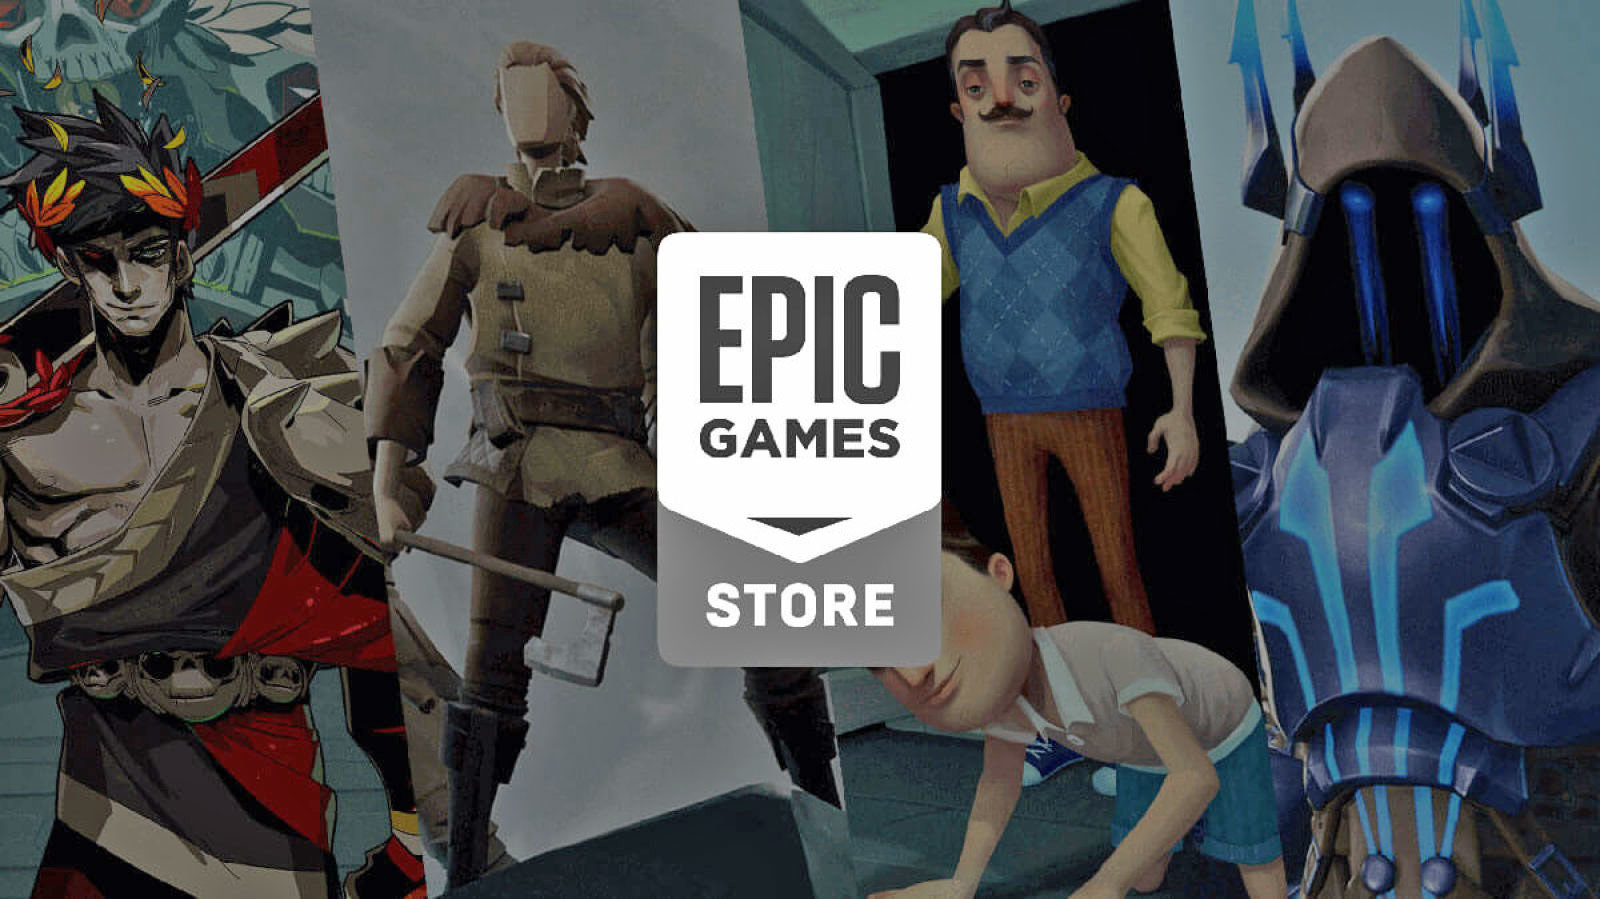 Epic Games Store ゲームストア機能ロードマップを発表 6ヶ月以内にクラウドセーブやウィッシュリストなどを約束 Wpteq